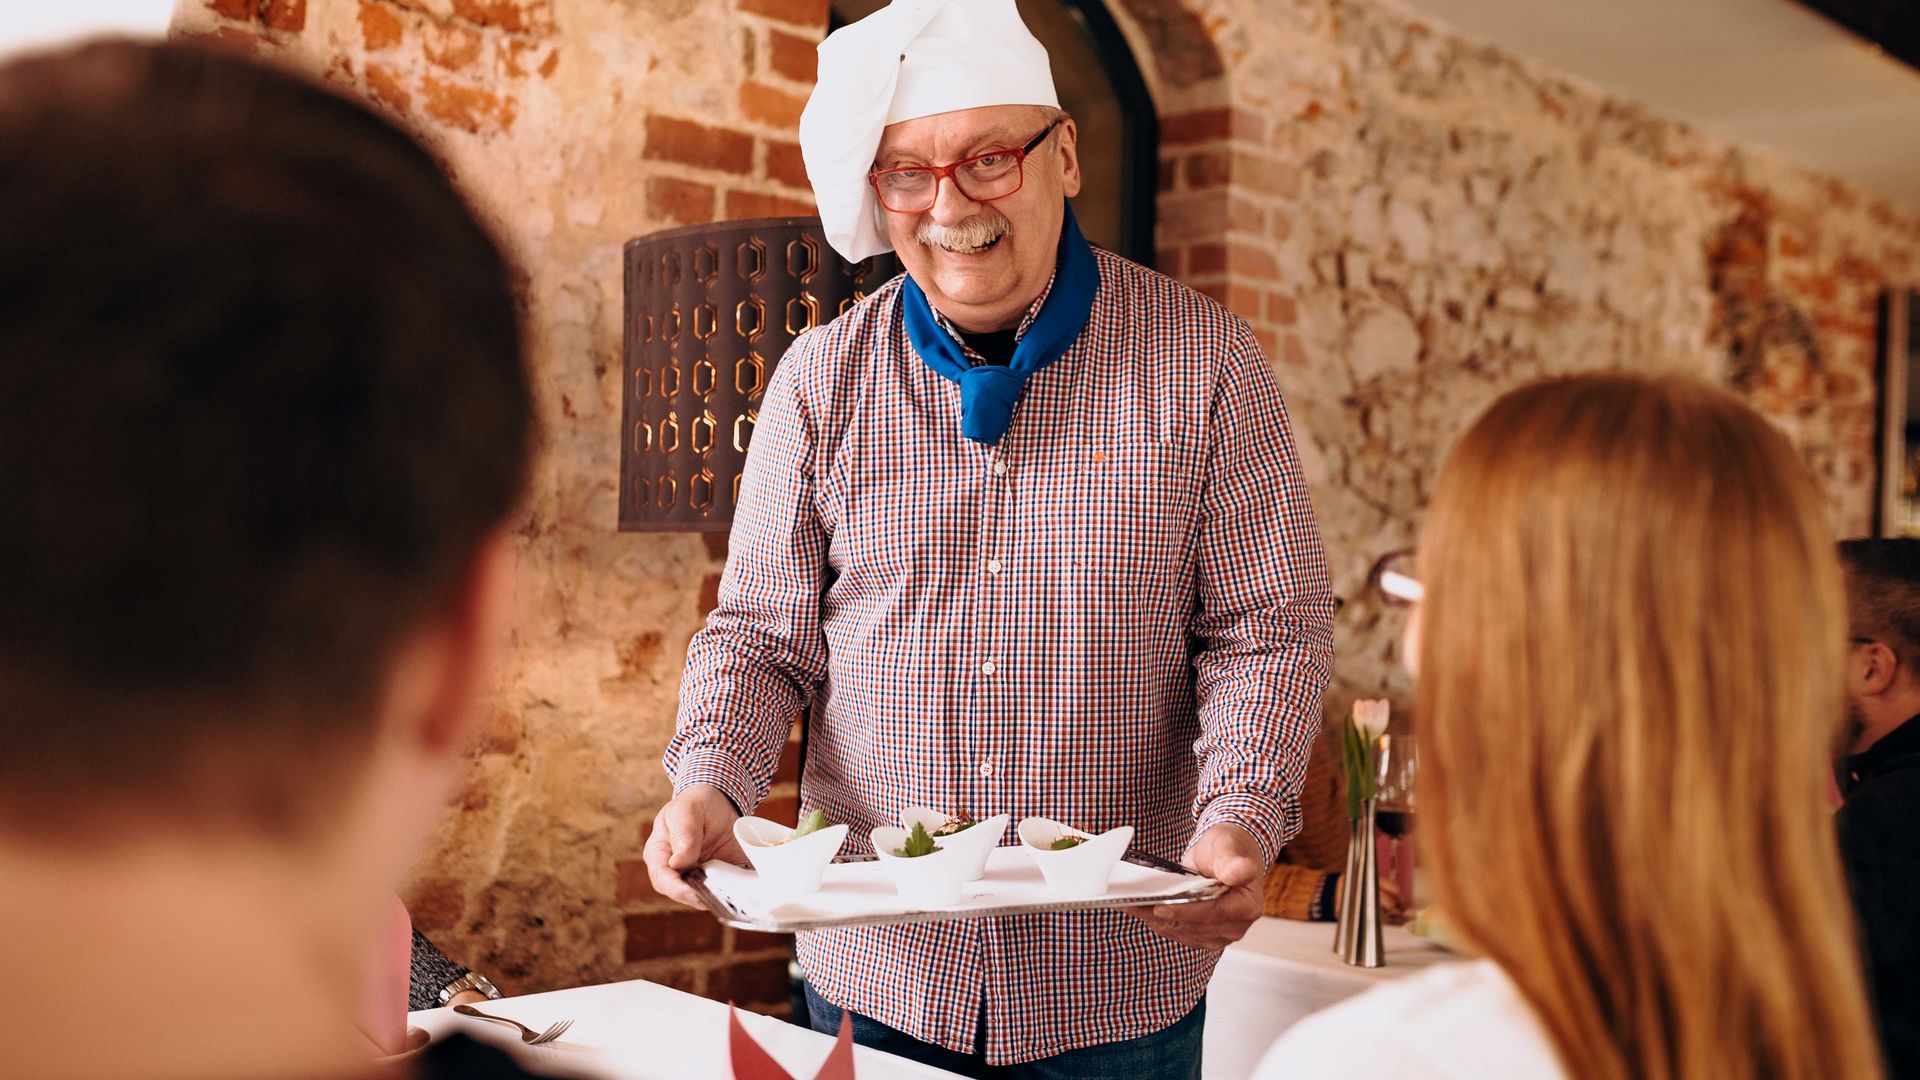 W Ratskeller Grimma przewodnik i kucharz Frank Ziegra prezentuje parze kilka przystawek podczas wycieczki kulinarnej po mieście Grimma, restauracje i kawiarnie